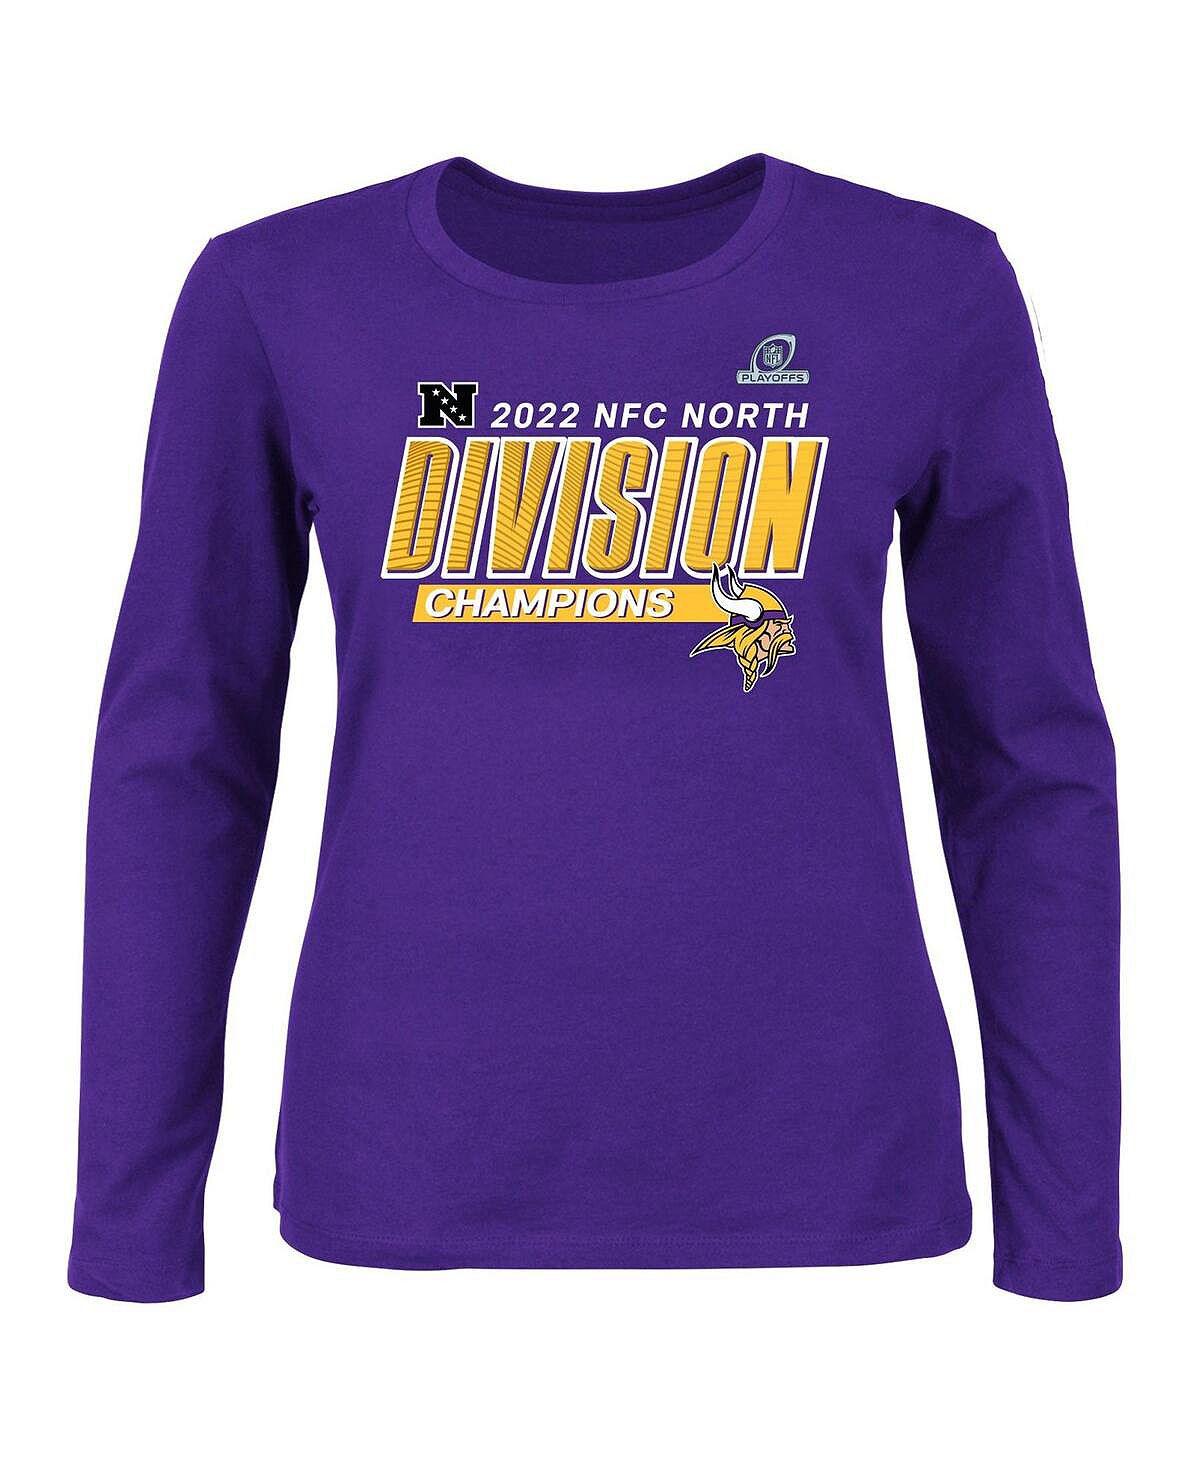 Женская фиолетовая футболка с длинным рукавом Minnesota Vikings размера плюс 2022 NFC North Division Champions Divide and Conquer Fanatics